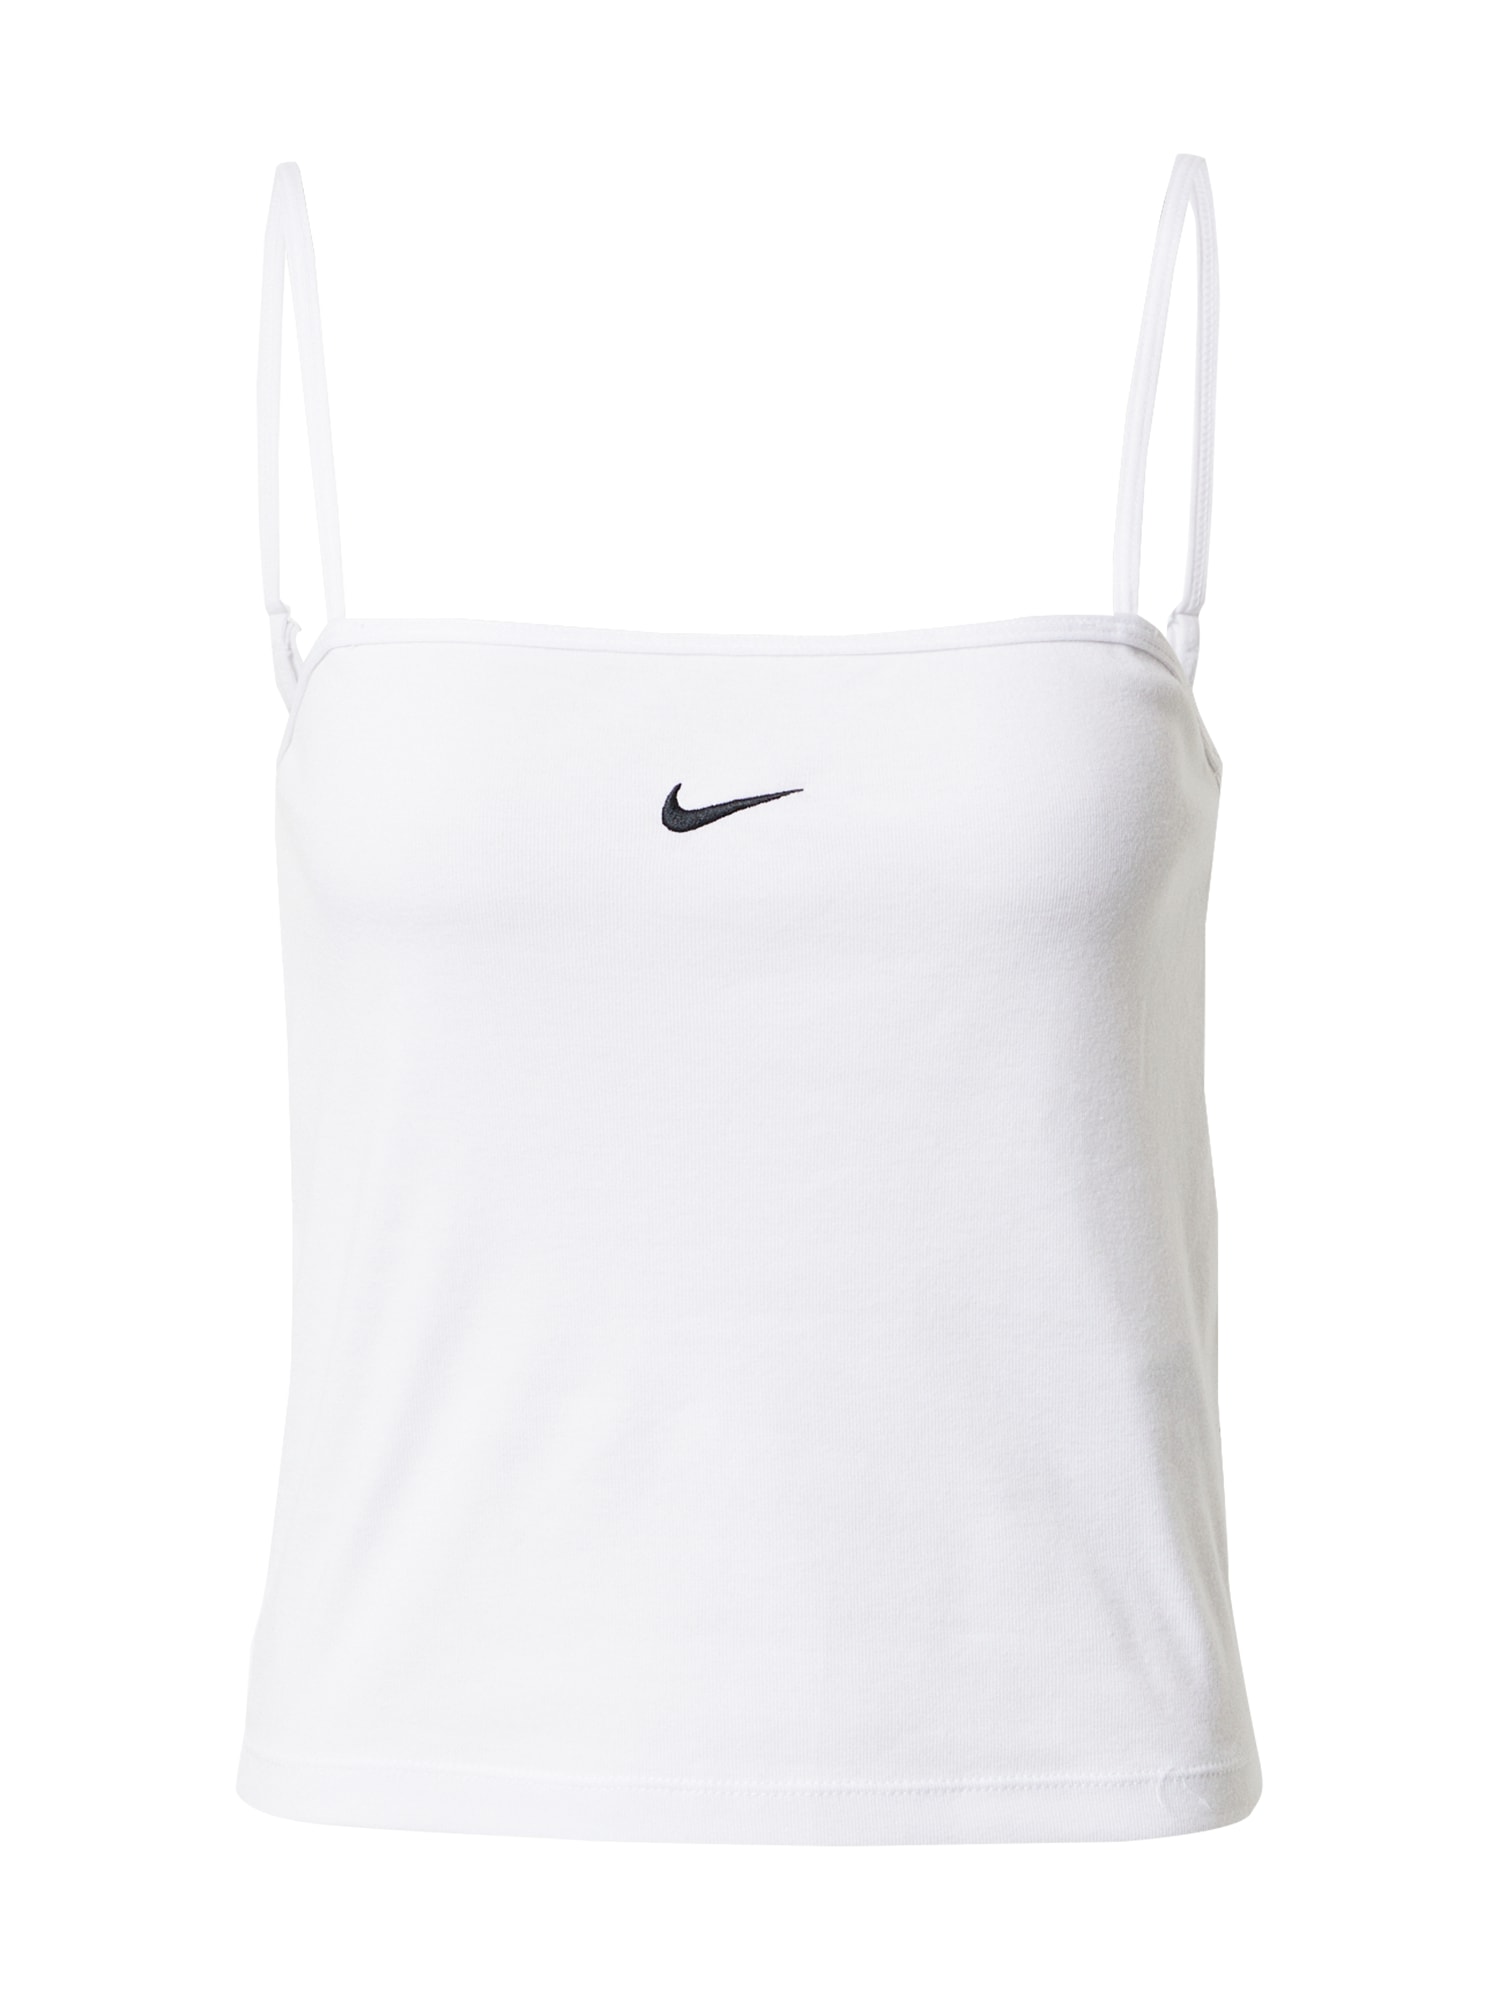 Nike Sportswear Top  fehér / fekete